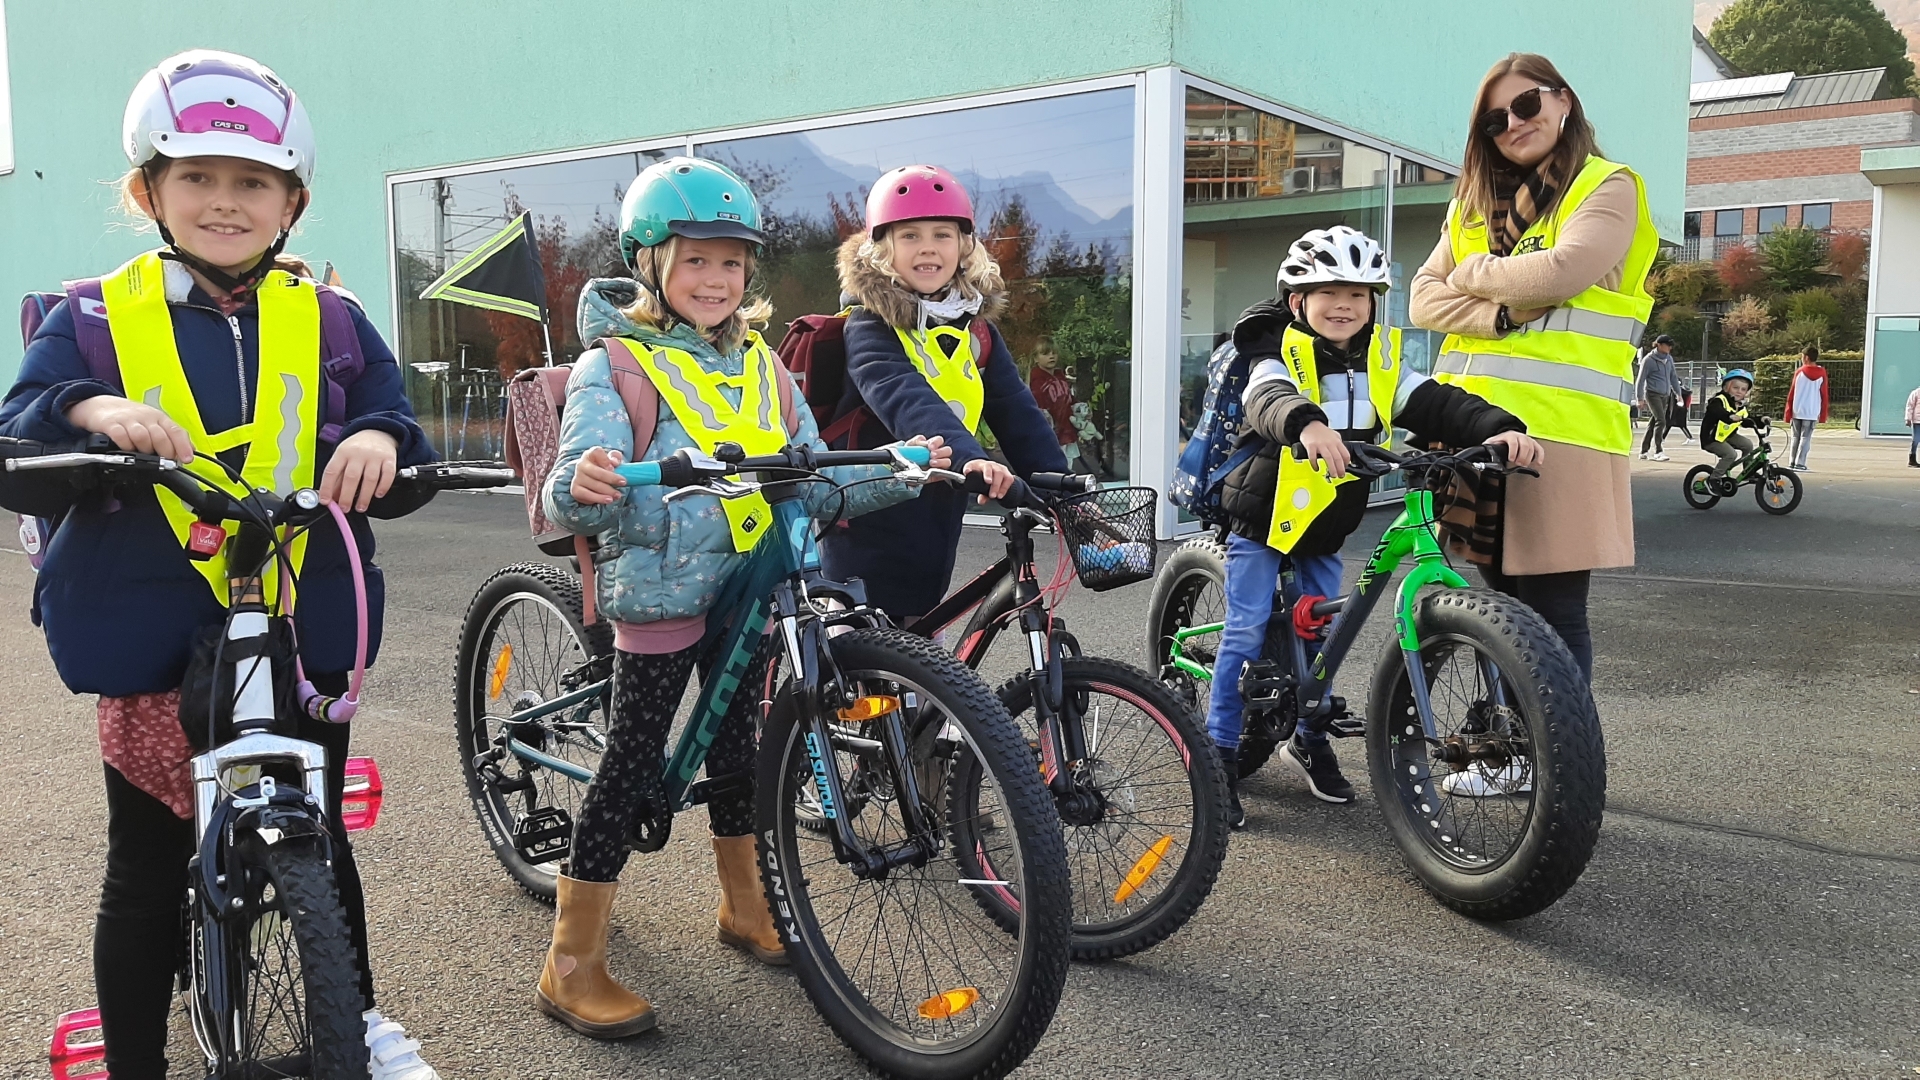 La ligne de vélobus souhaite promouvoir la mobilité douce auprès des enfants et des parents.